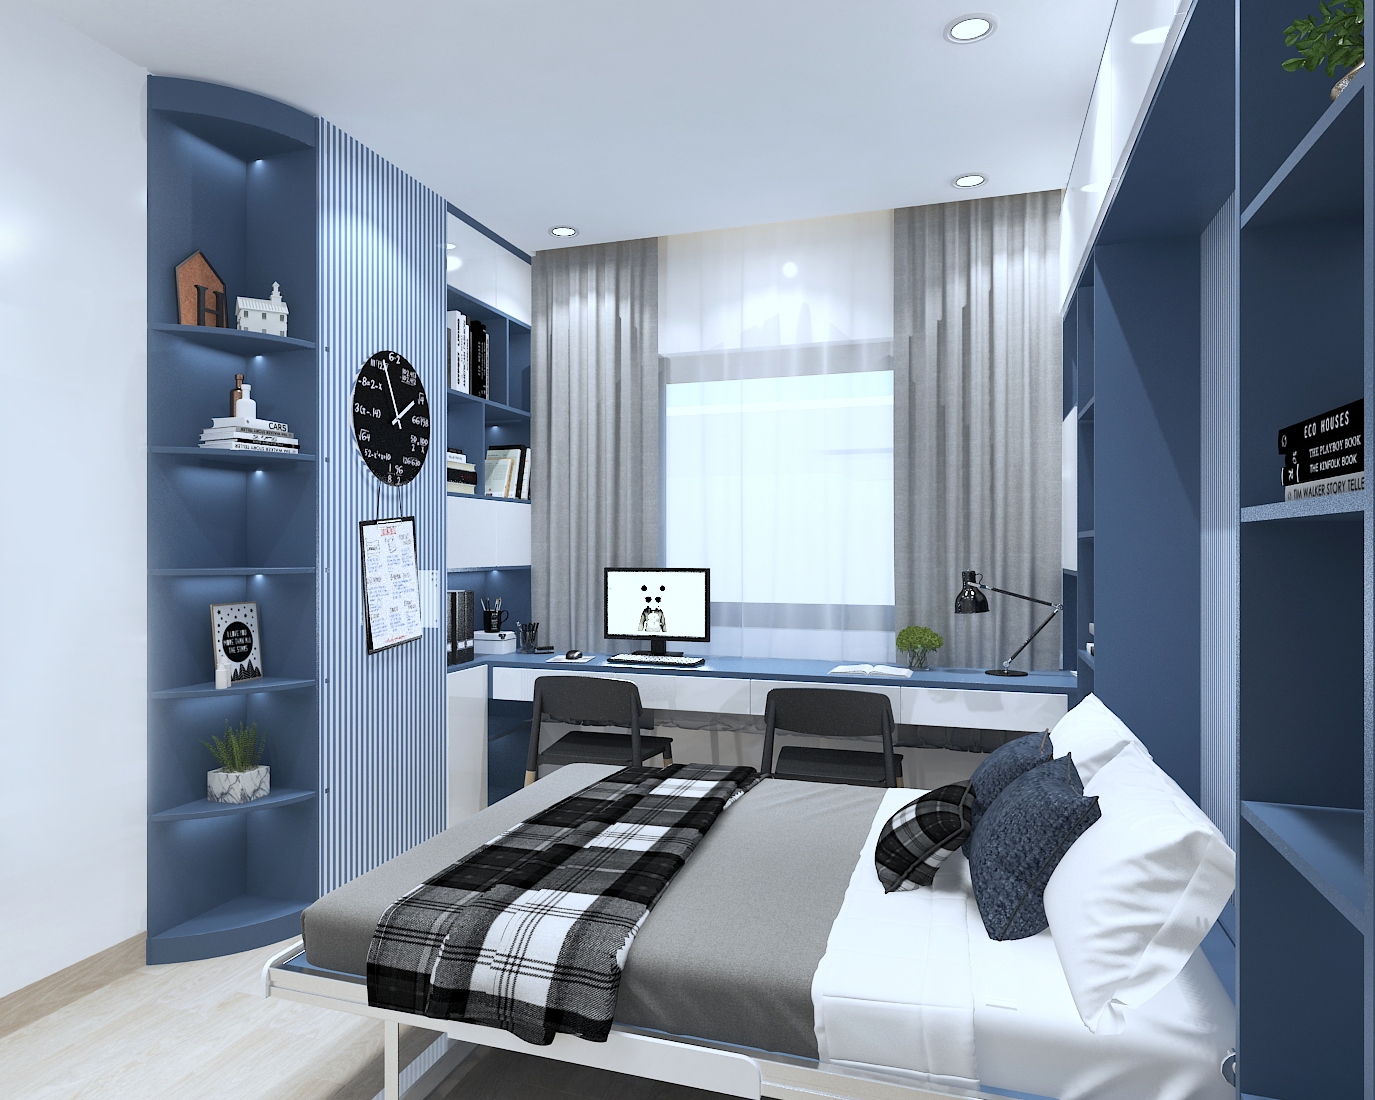 Sử dụng màu xanh dương nhã nhặn cho phòng ngủ 